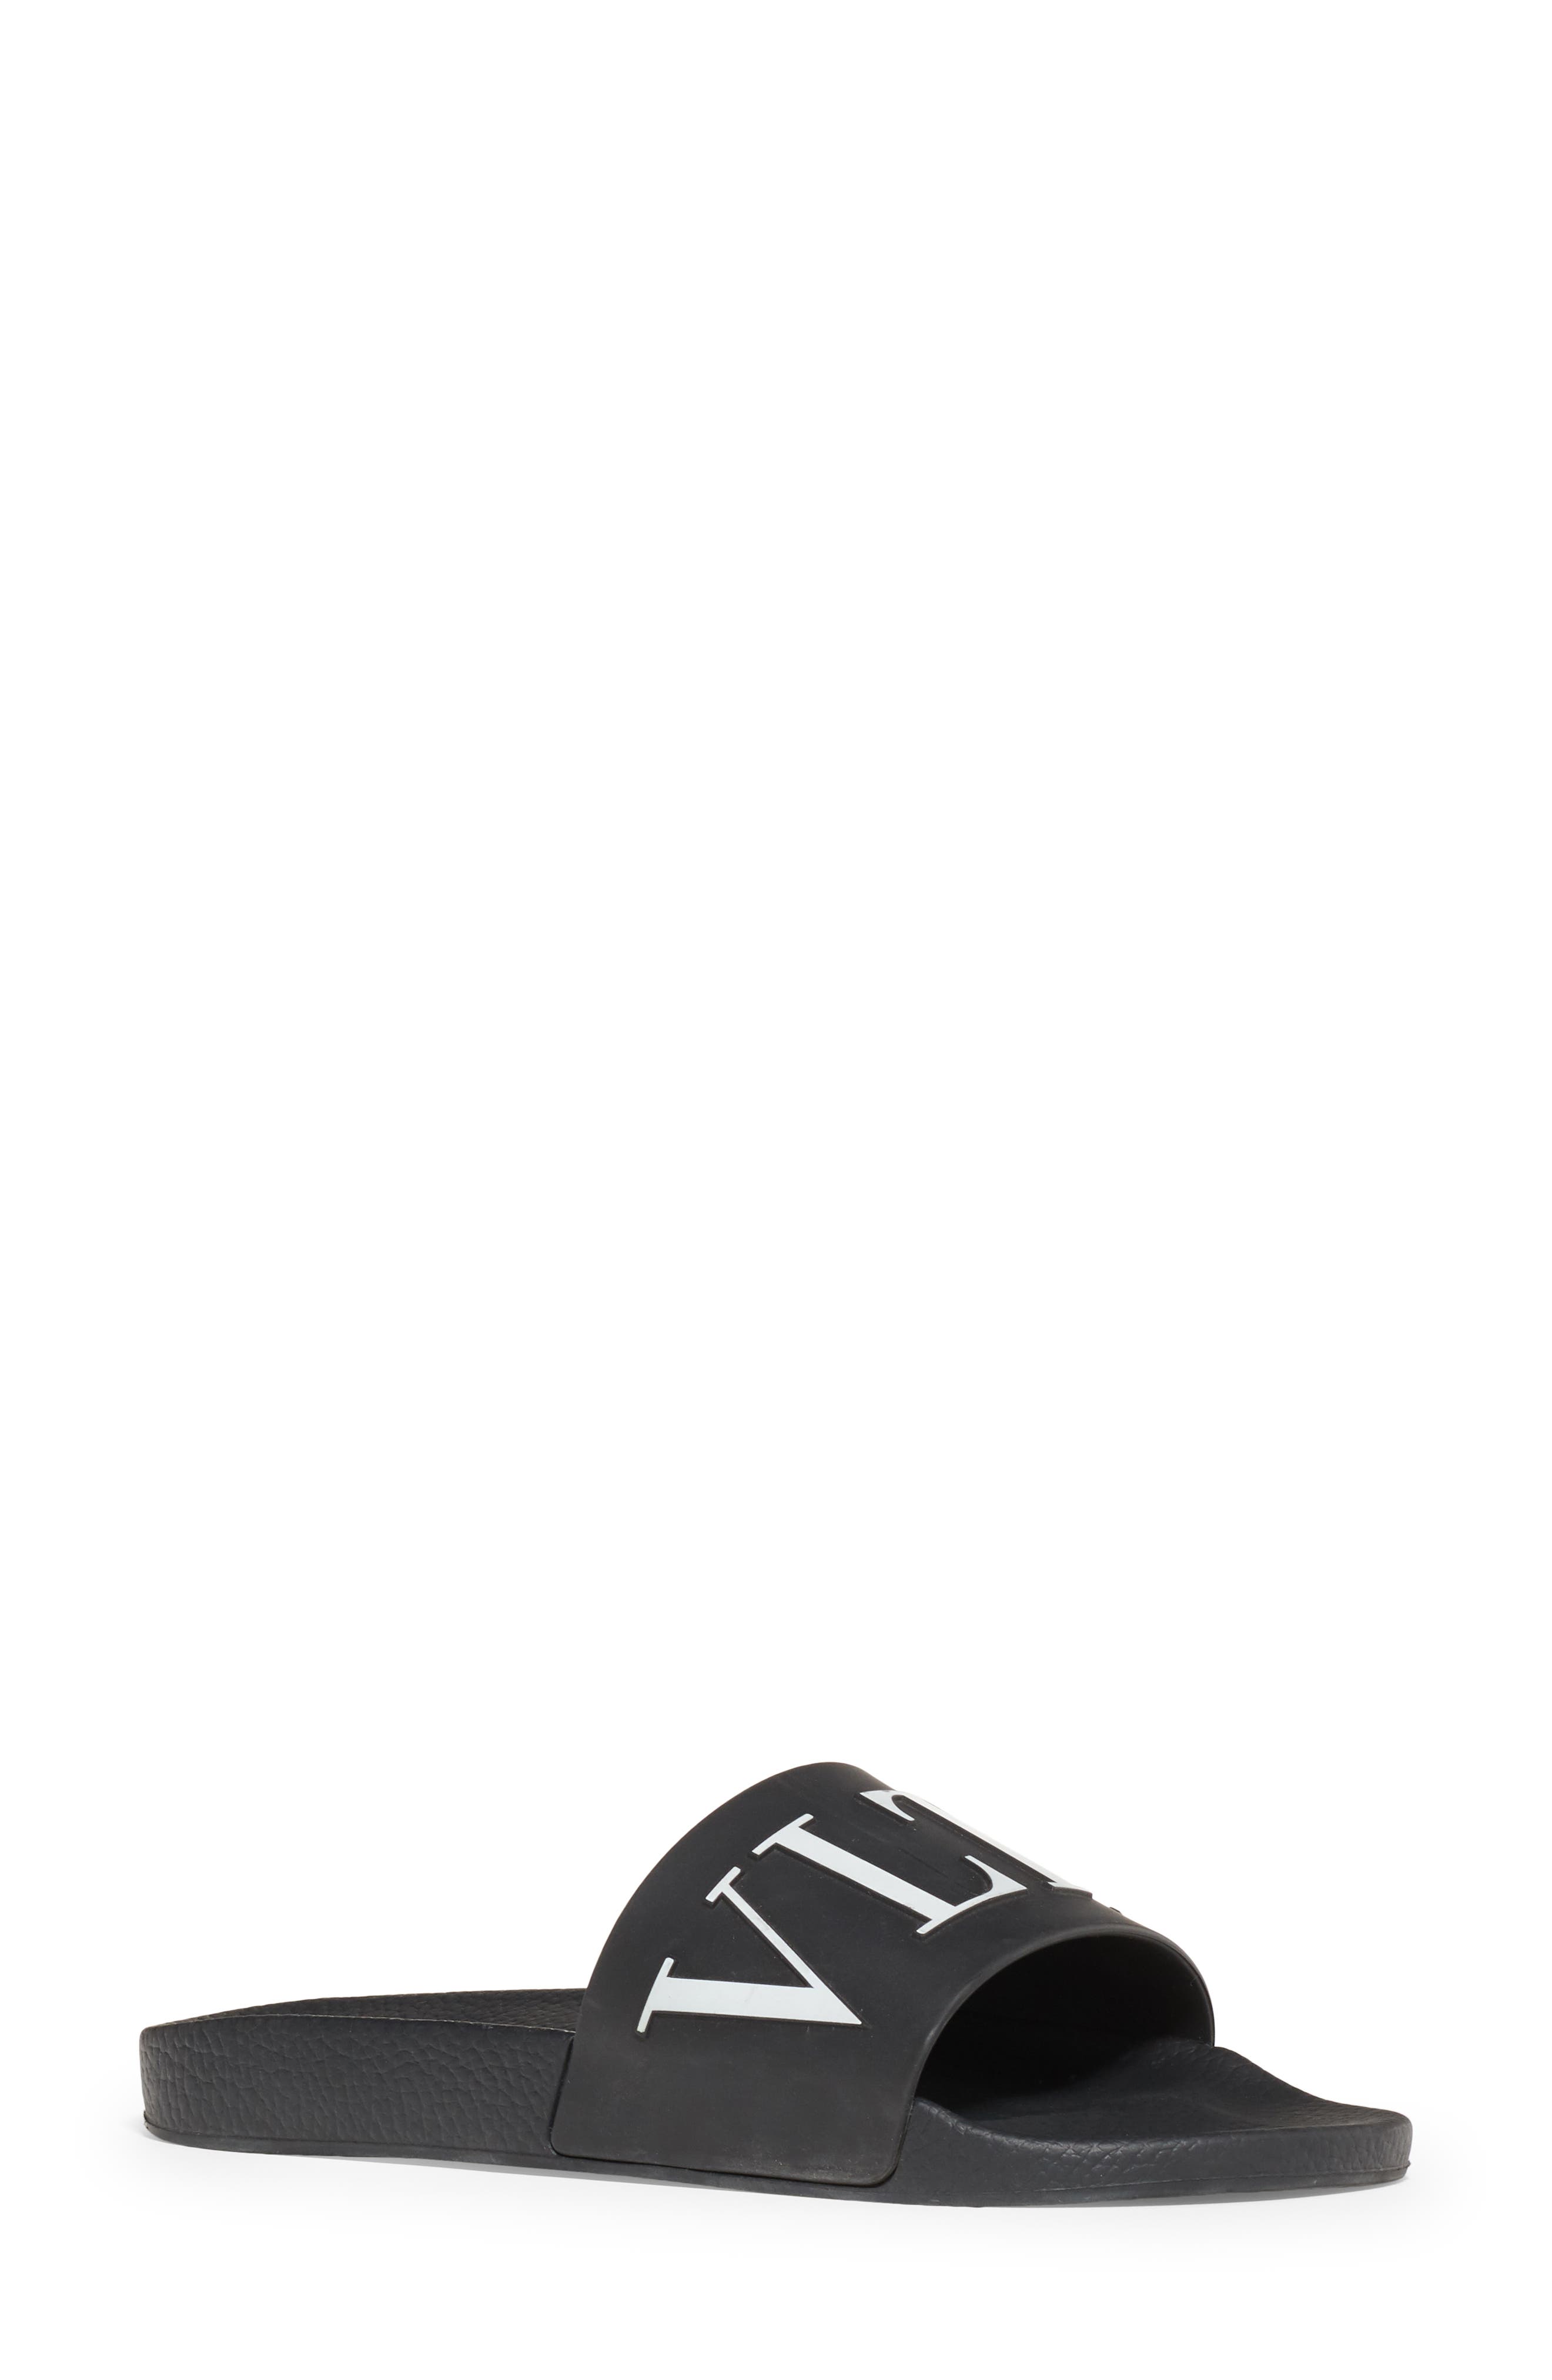 Valentino Garavani VLTN Slide Sandal in Black at Nordstrom, Size 13Us